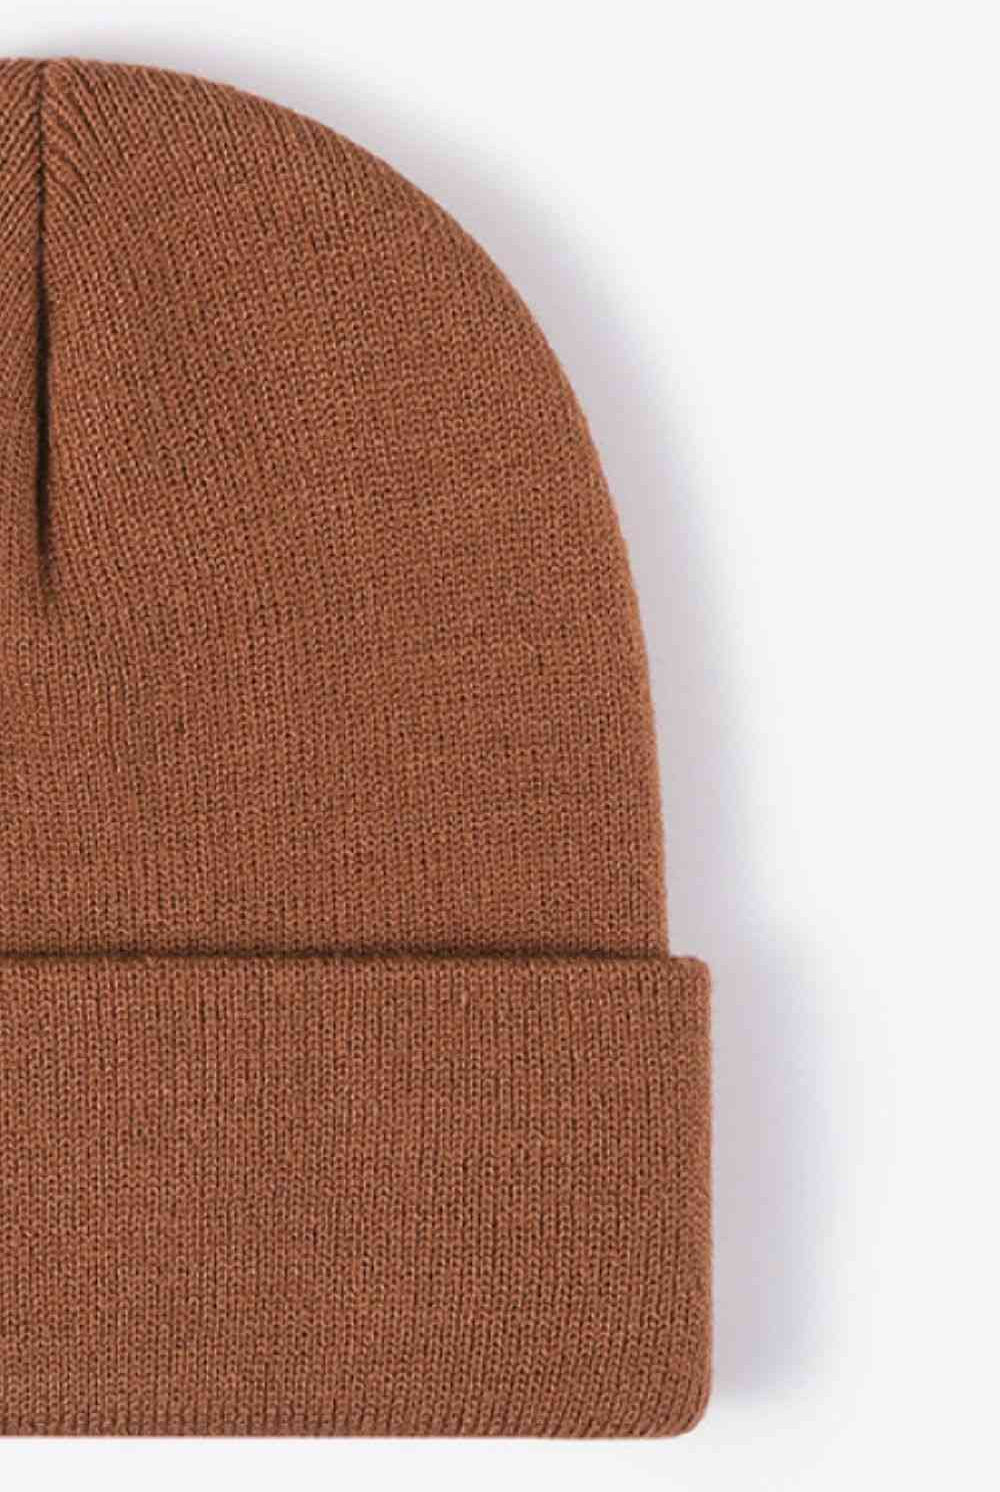 Sienna Cuff Knit Beanie Winter Accessories